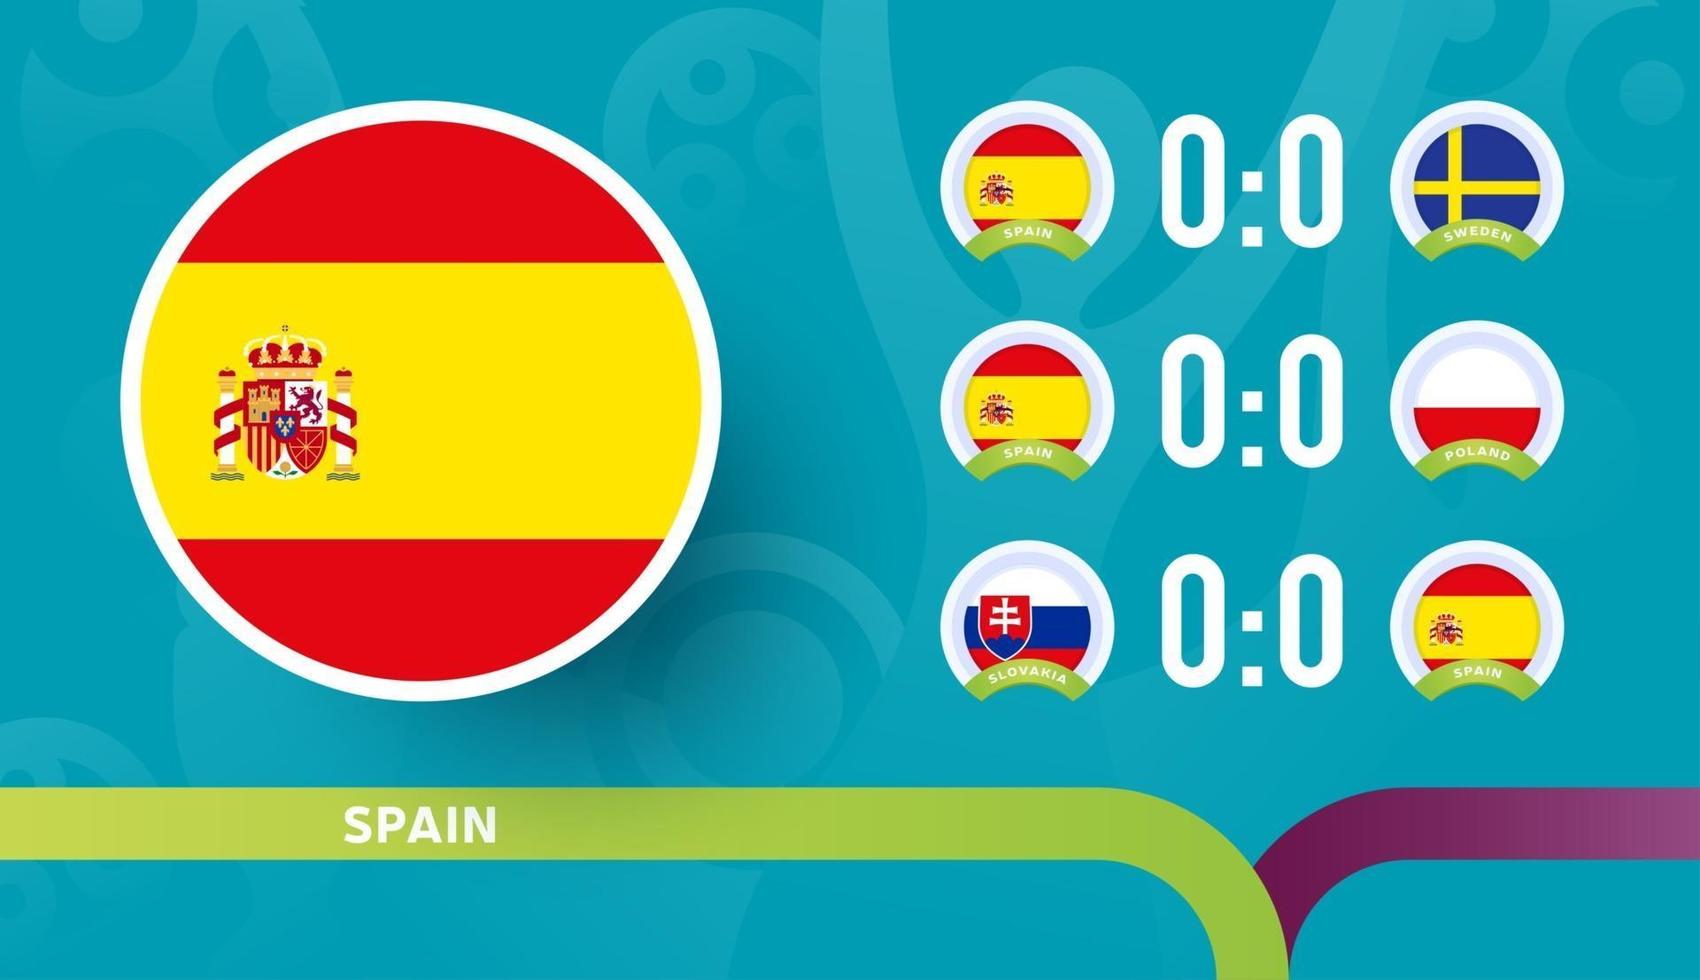 spaniens landslagsschema i sista etappen vid fotbollsmästerskapet 2020. vektorillustration av fotboll 2020-matcher vektor